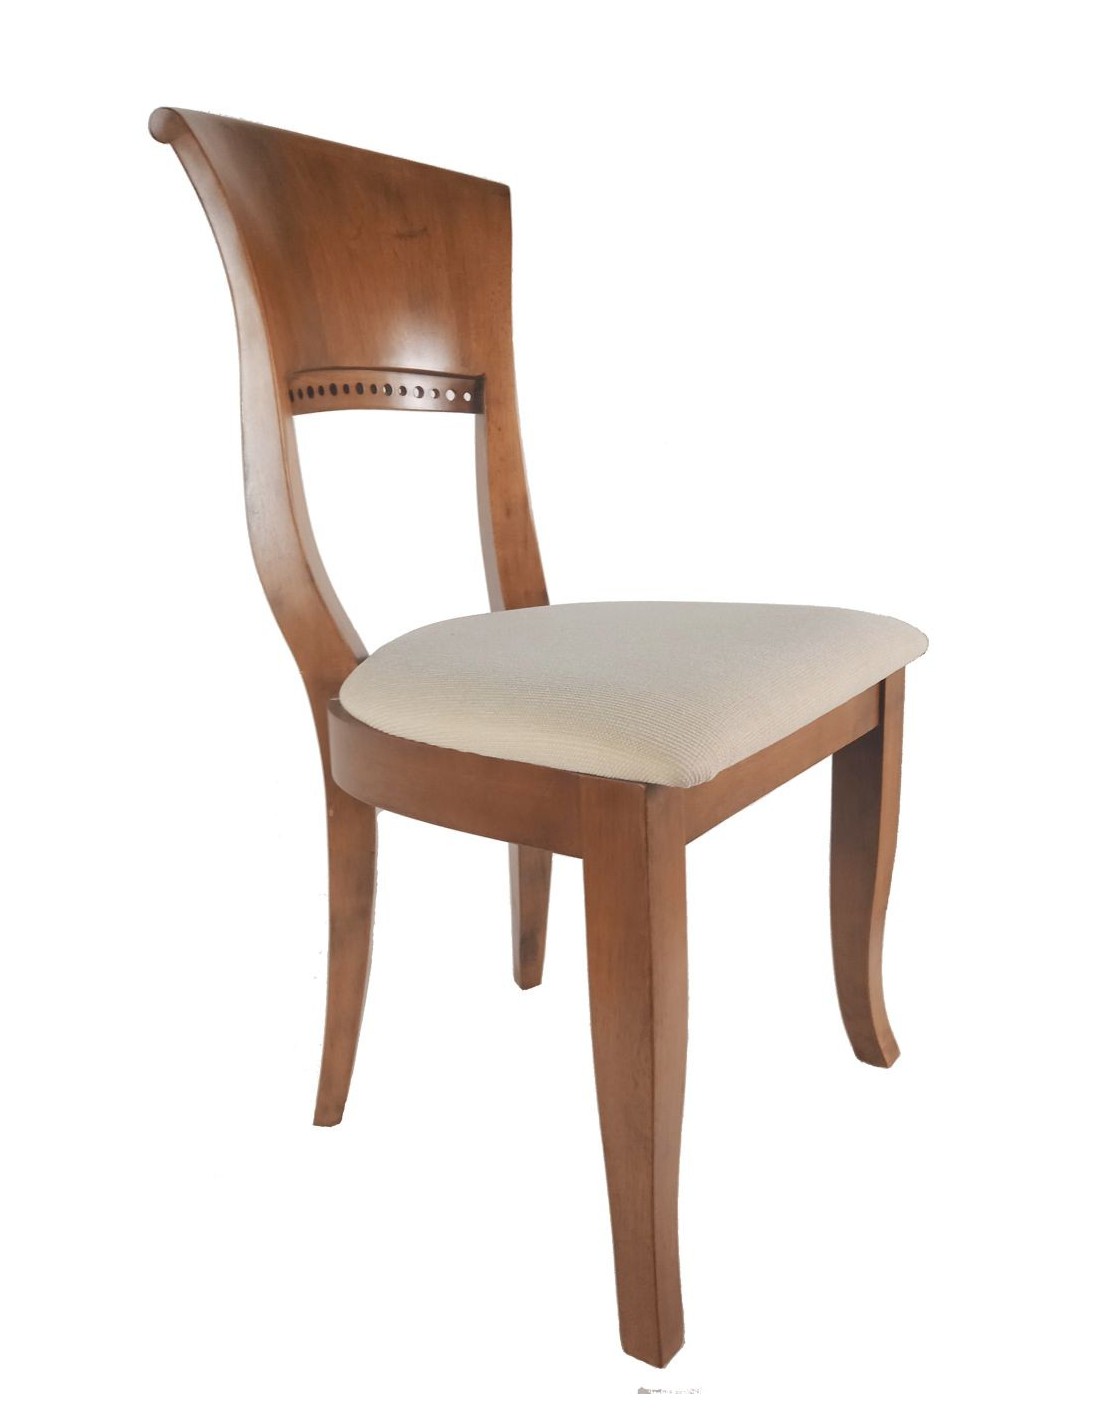 Juego de 4 sillas de comedor madera de caucho diseño nórdico asiento pre-tapizado decoración hogar